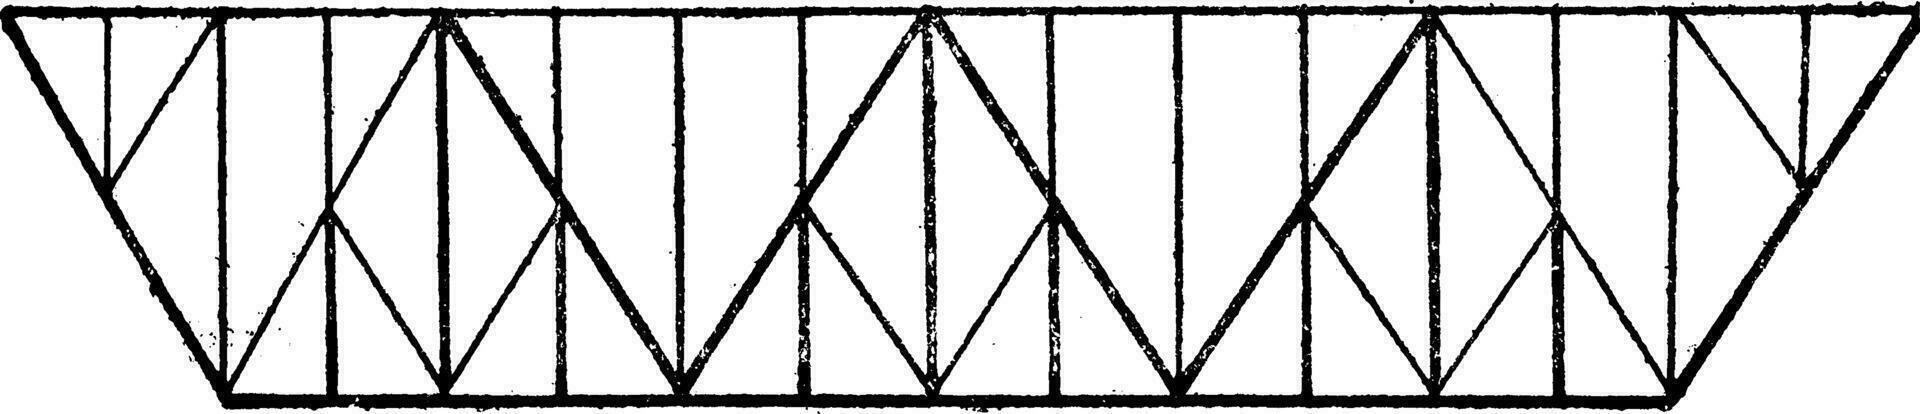 triangular sistema marca, Clásico grabado. vector